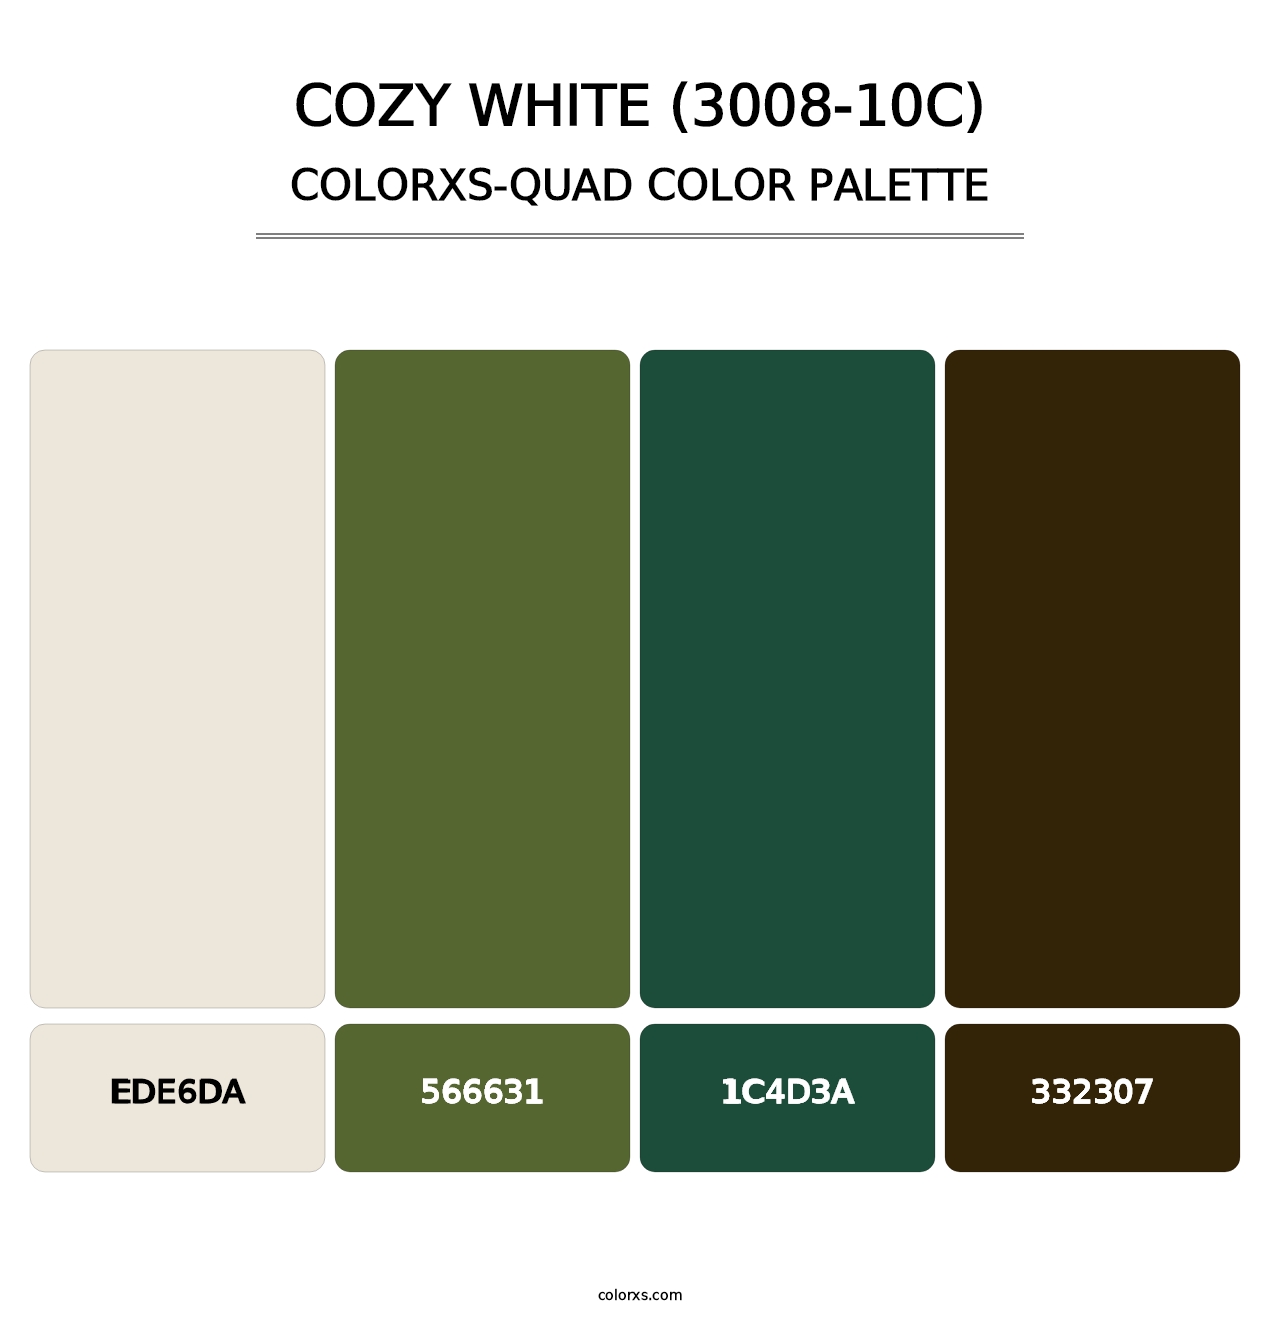 Cozy White (3008-10C) - Colorxs Quad Palette